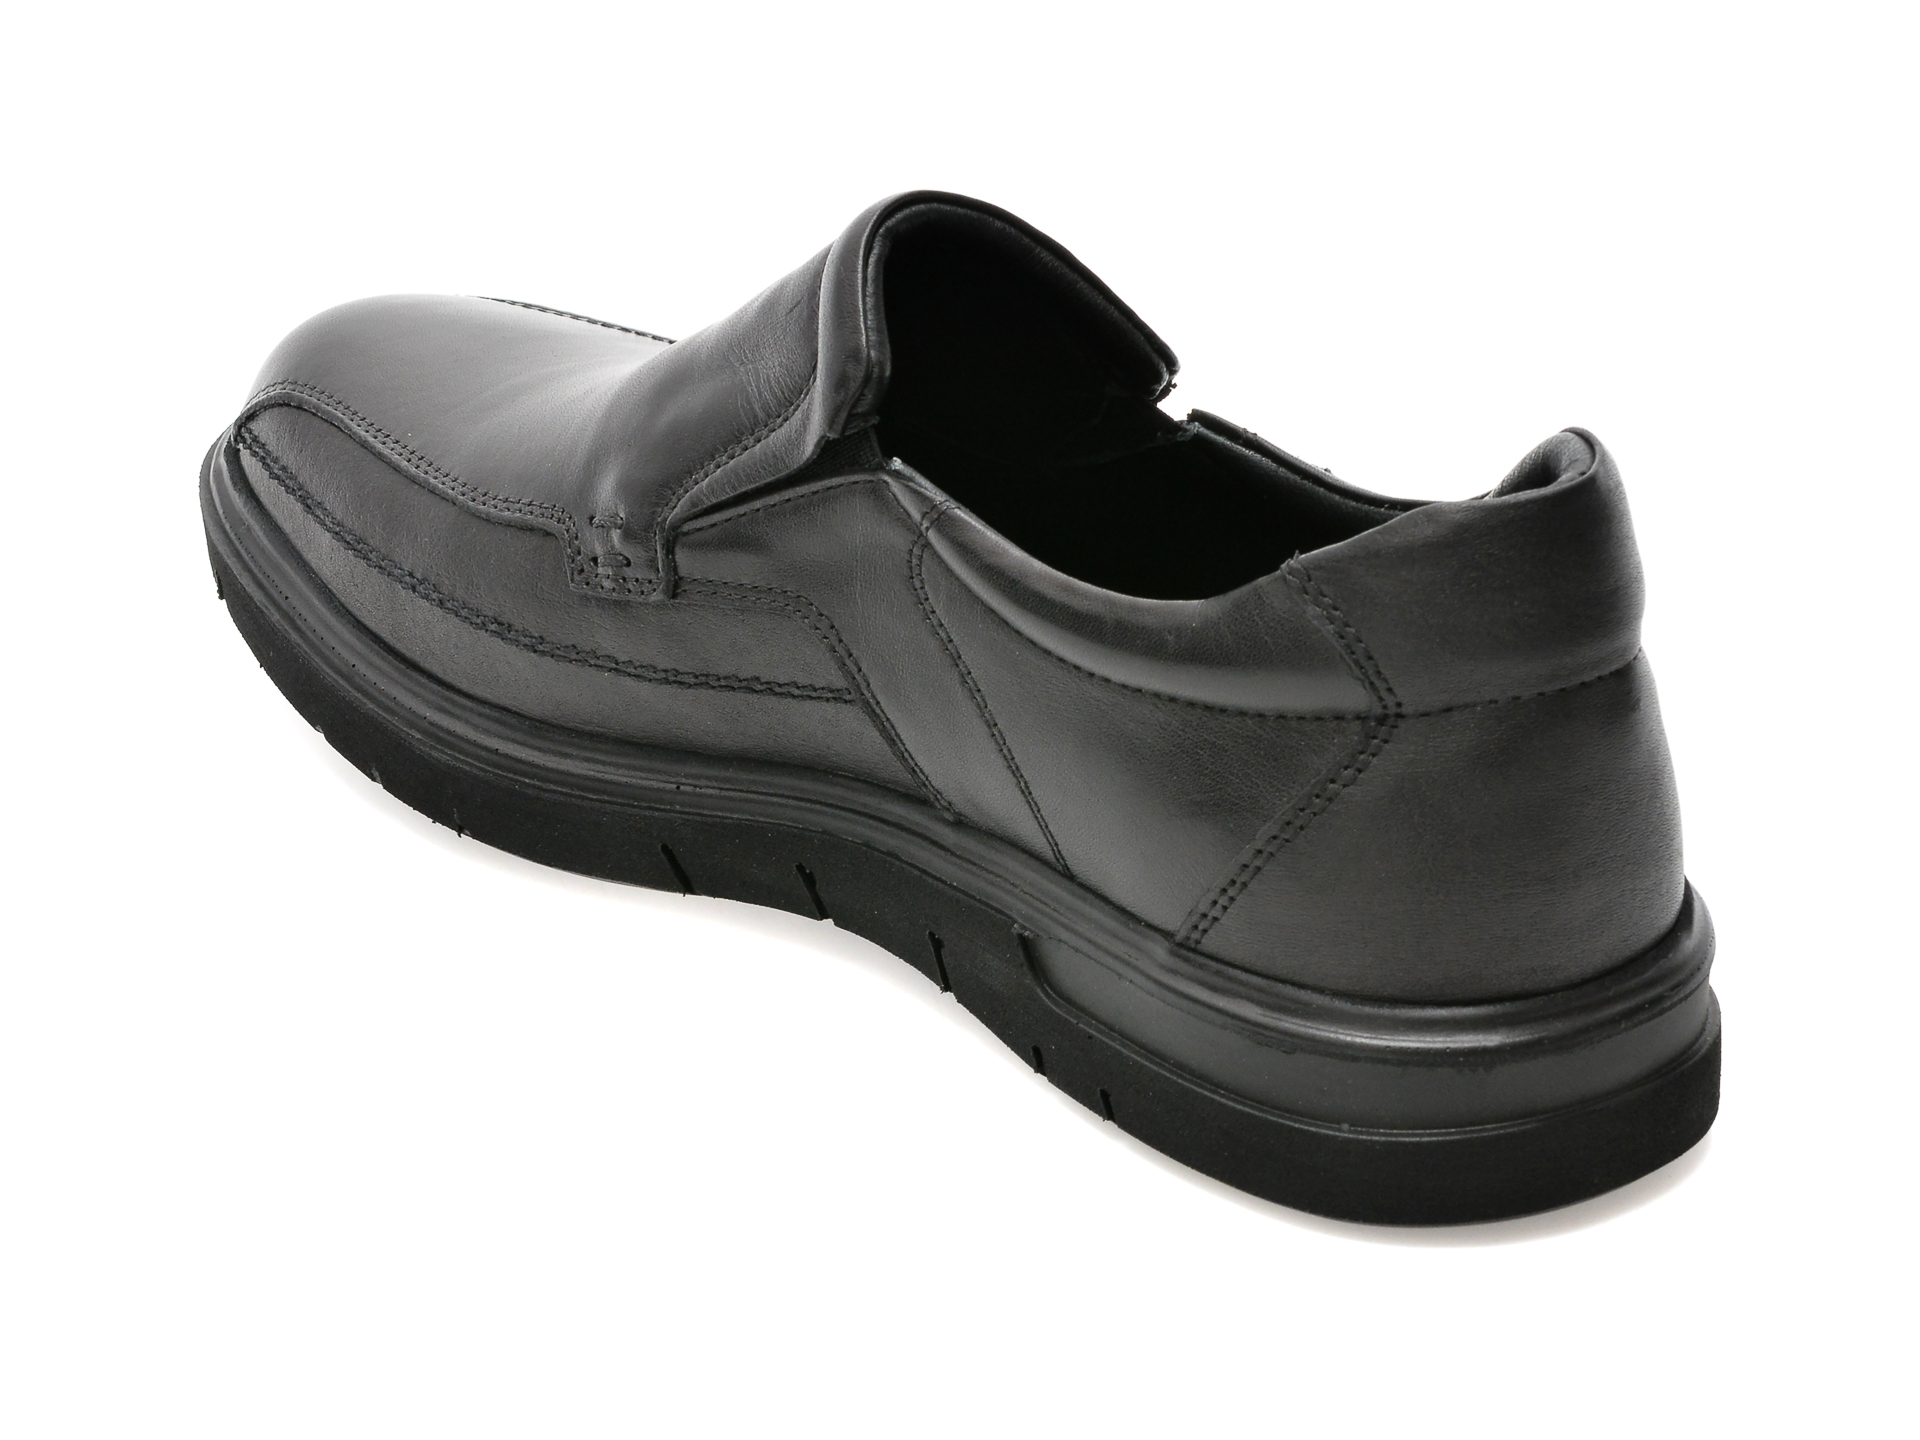 Poze Pantofi OTTER negri, 2803, din piele naturala tezyo.ro